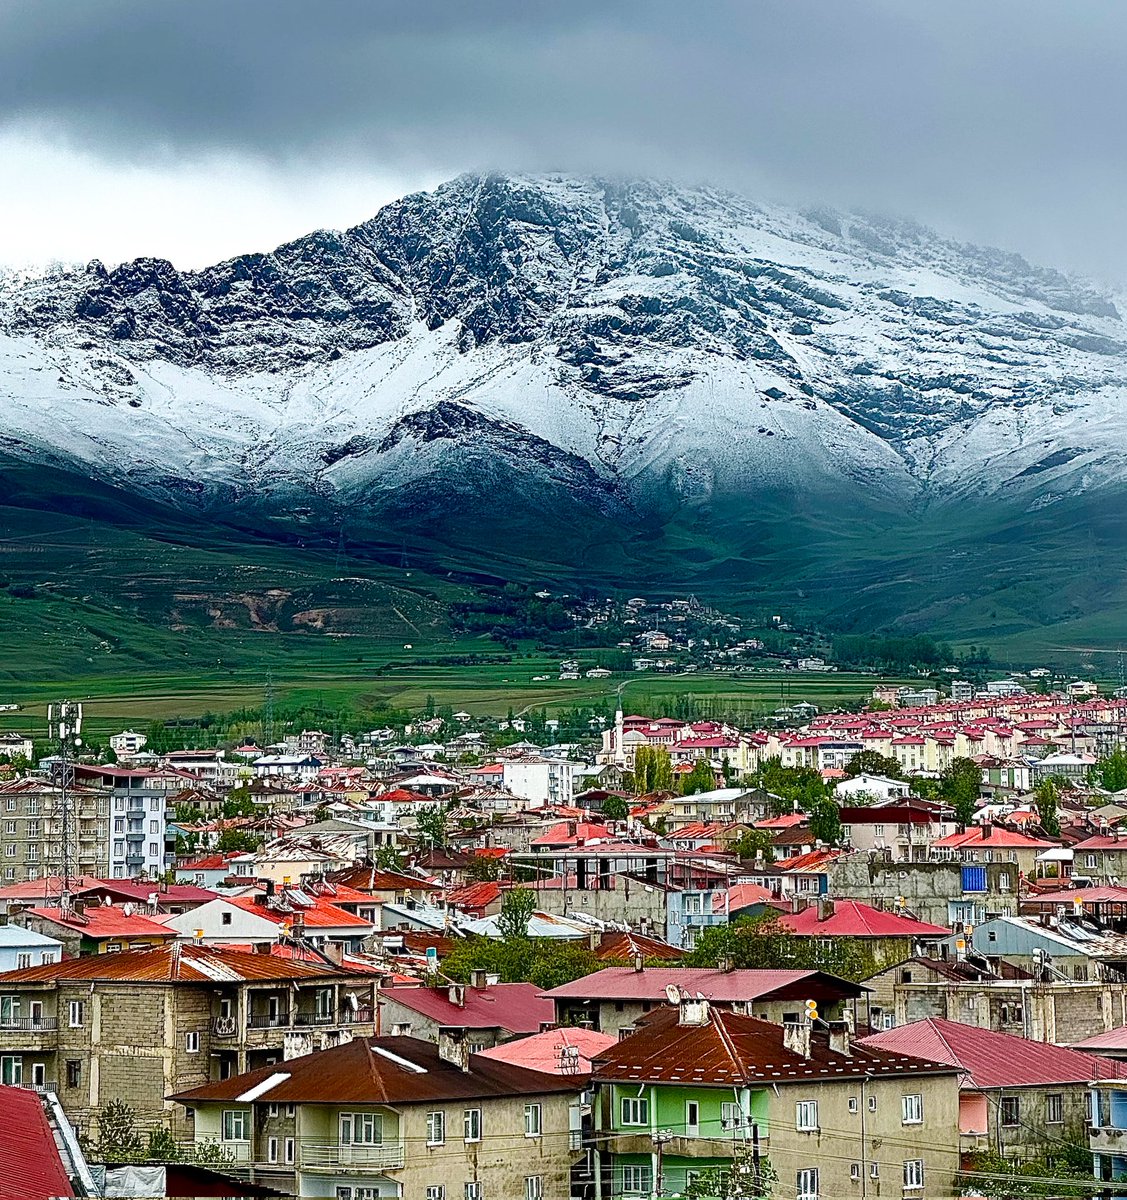 Bizim buralar hâlen kar kış kıyamet ☺️ Tüm Türkiye'yen farklı bir ilkim yaşatarak bizleri farklı ve özel hissettiren Van, teşekkürü hak ediyorsun 😁 📍Van /Erek Dağı